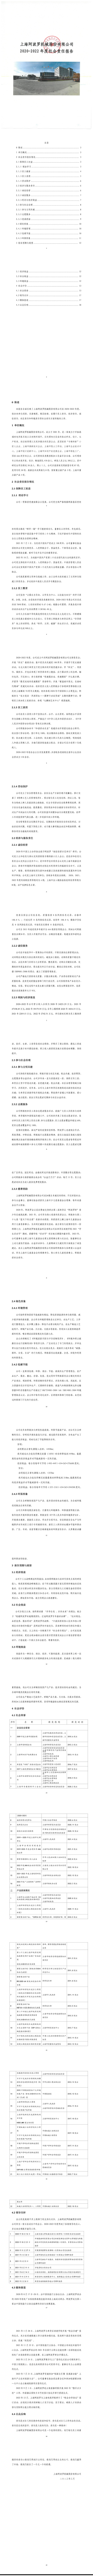 【阿波羅新聞】上海阿波羅機械股份有限公司2022年社會責任報告